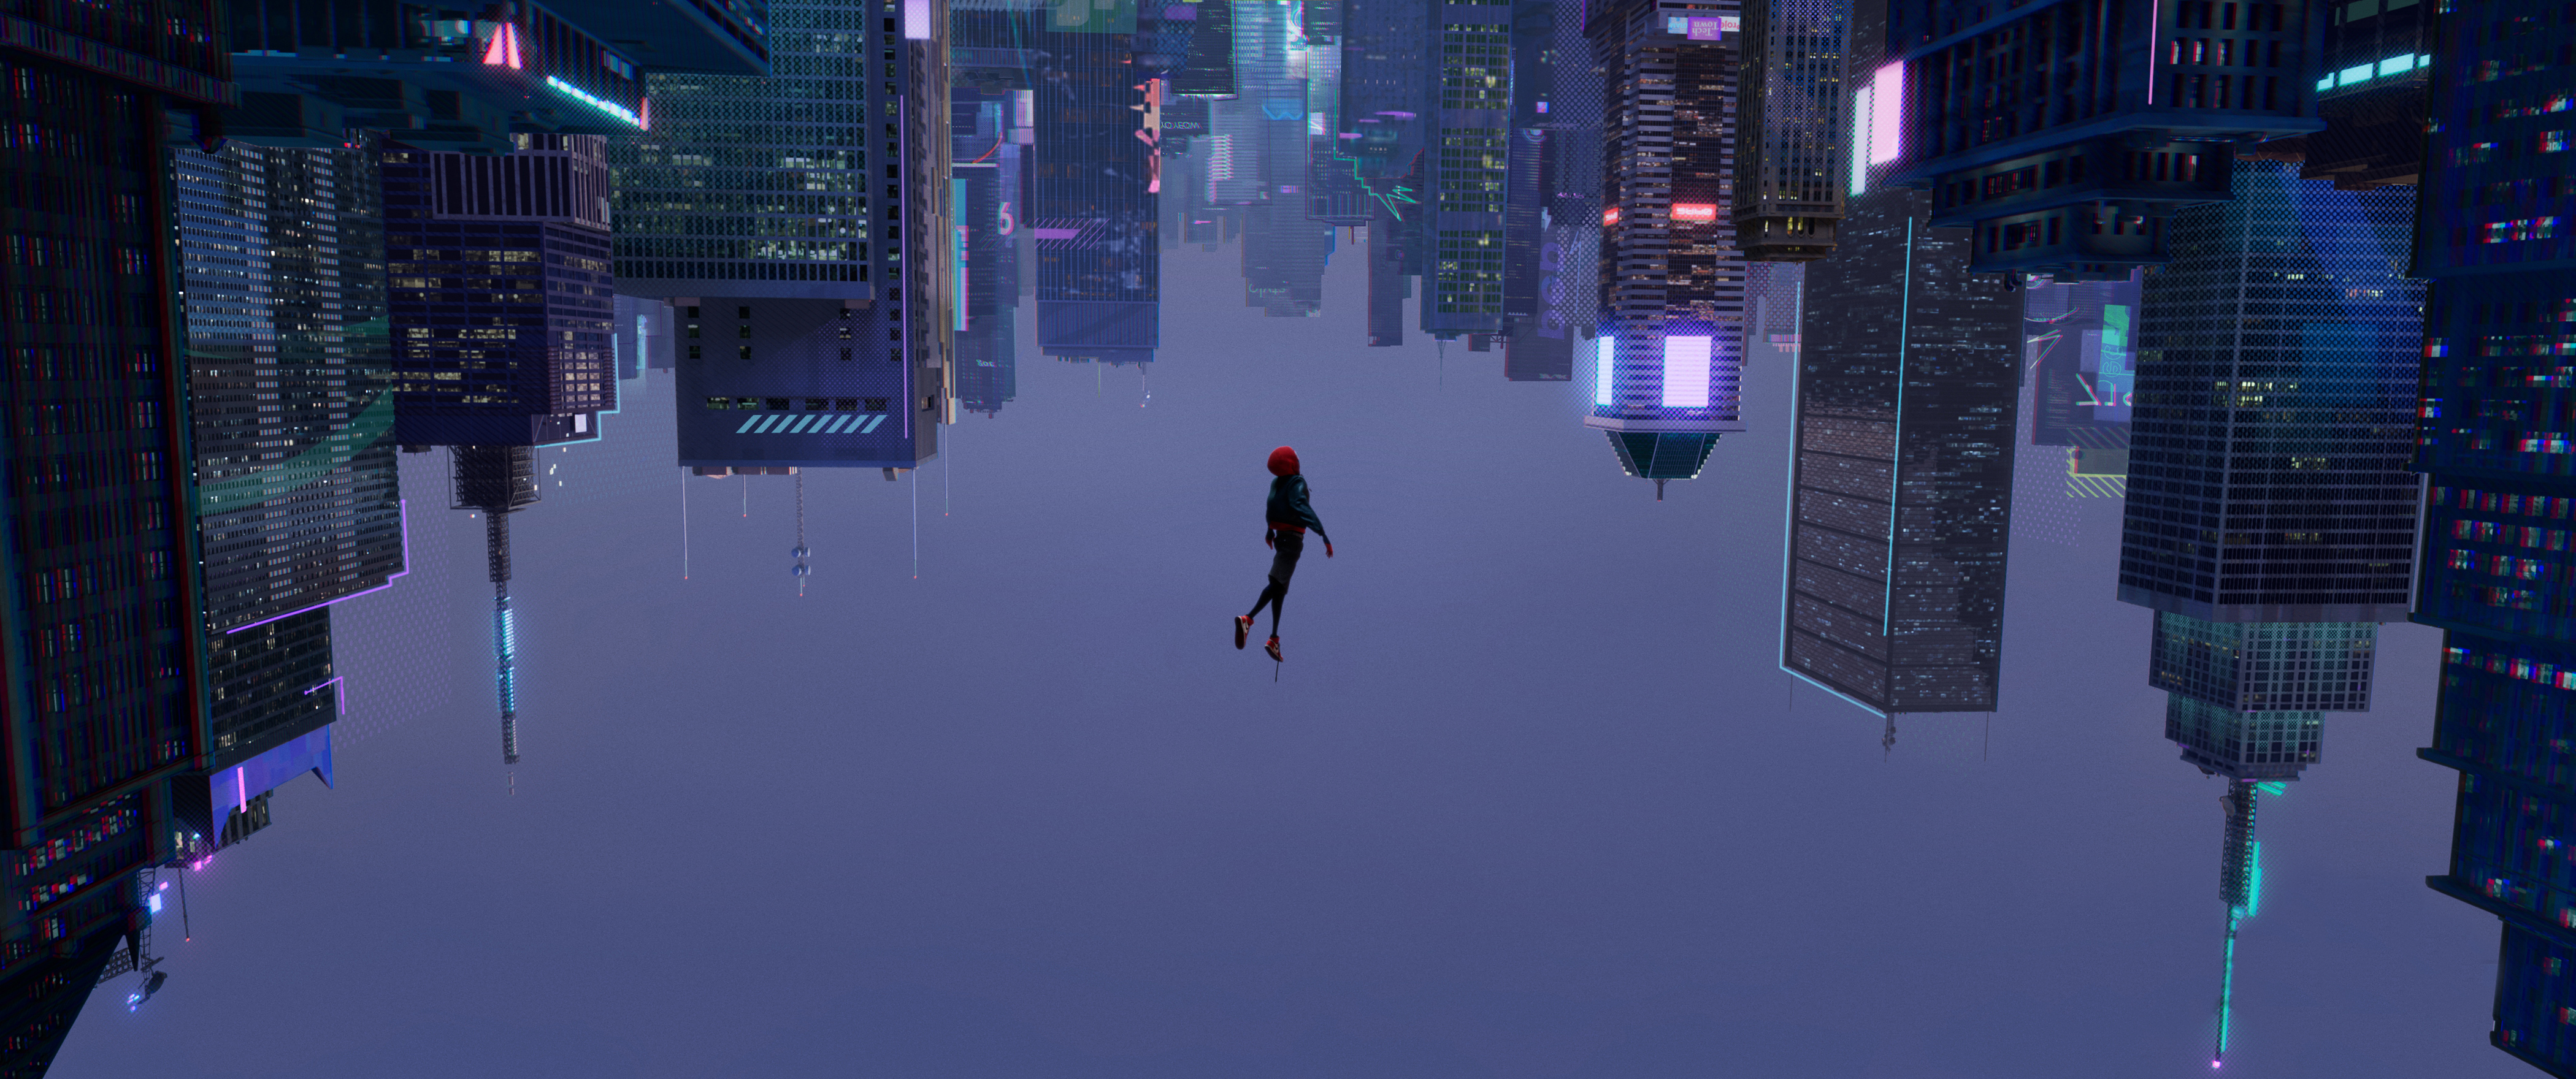 Descargar fondos de escritorio de Spider Man: Un Nuevo Universo HD